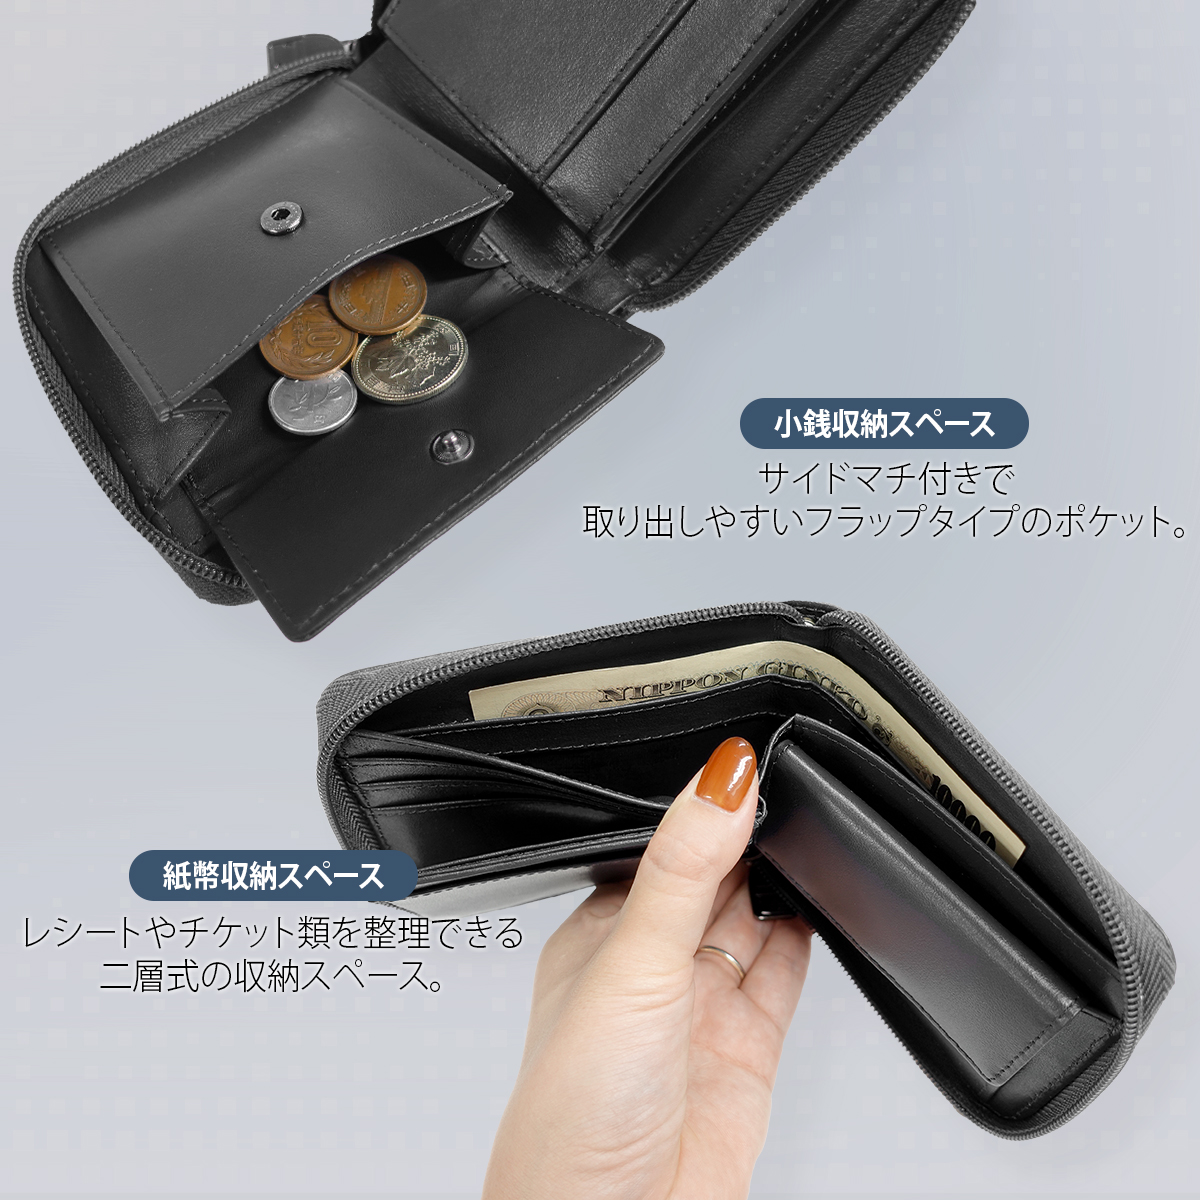 [アウトドアプロダクツ] 二つ折り財布 ボンデッドレザー メタルプレート レザー 紙幣収納 小銭収納 カード収納 ダークブラウン